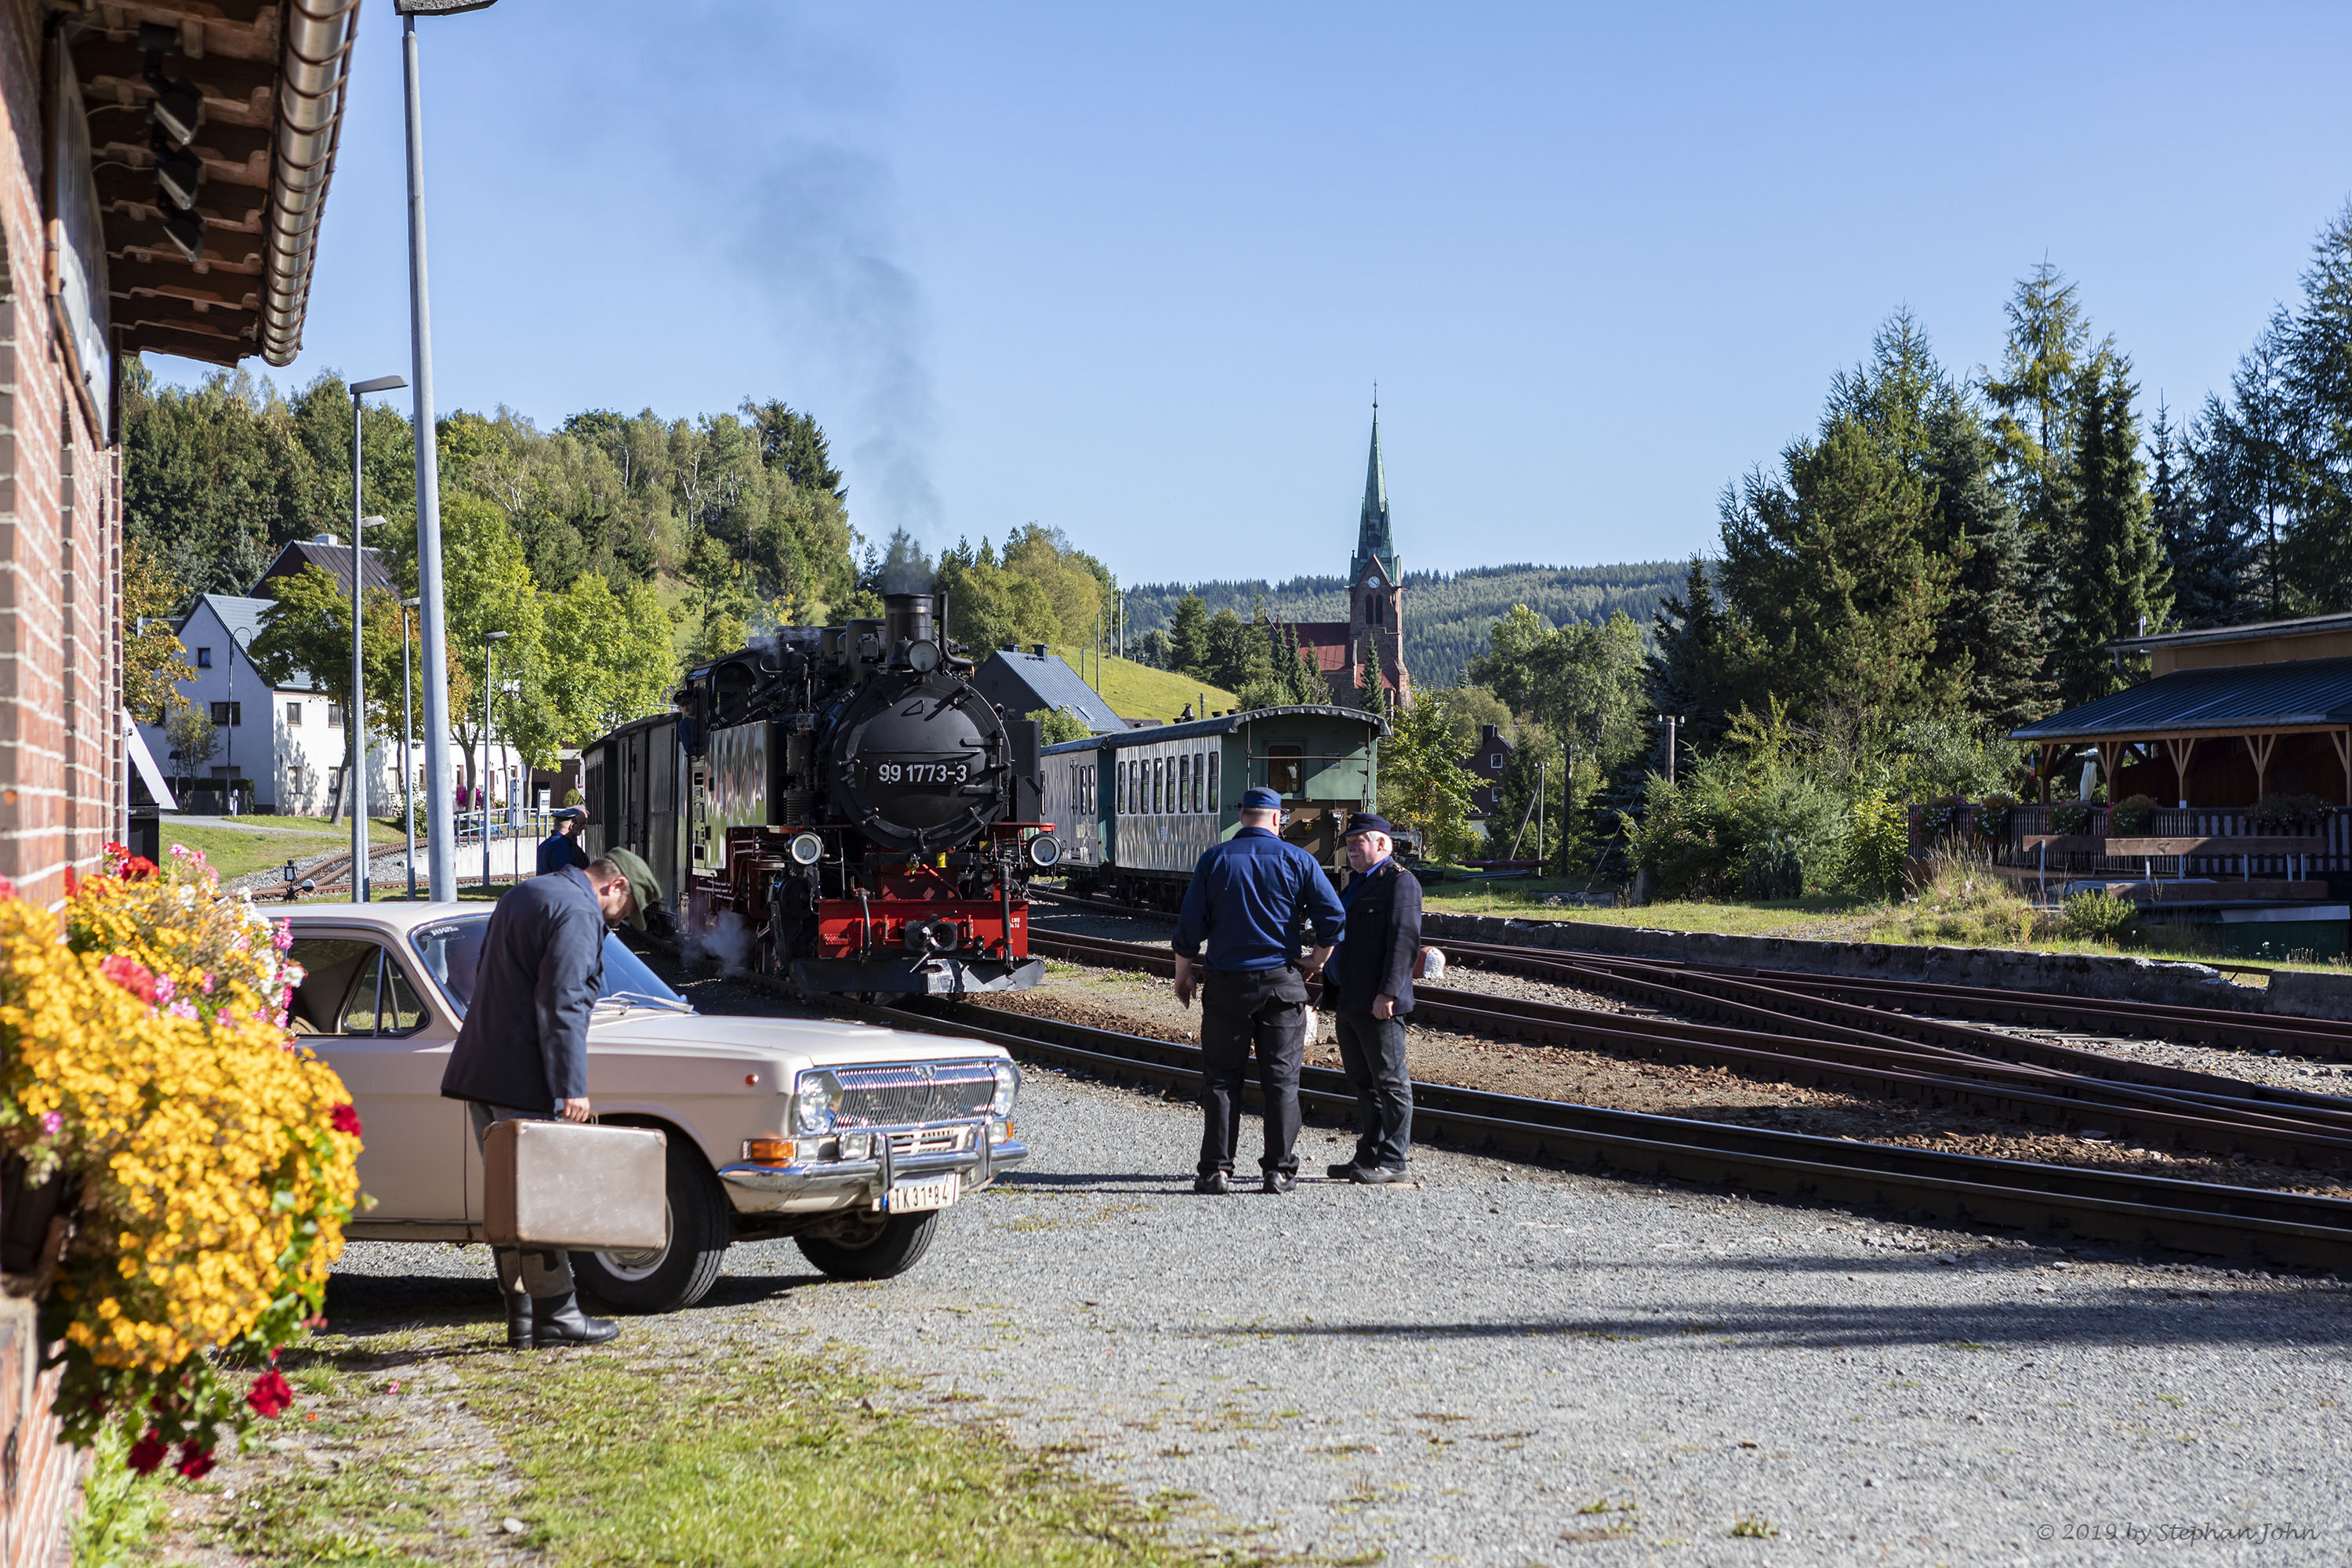 Zug 9005 mit Lok 99 1773-3 fährt mit dem Personenzug in Richtung Oberwiesenthal wartet in Hammerunterwiesenthal auf den Gegenzug